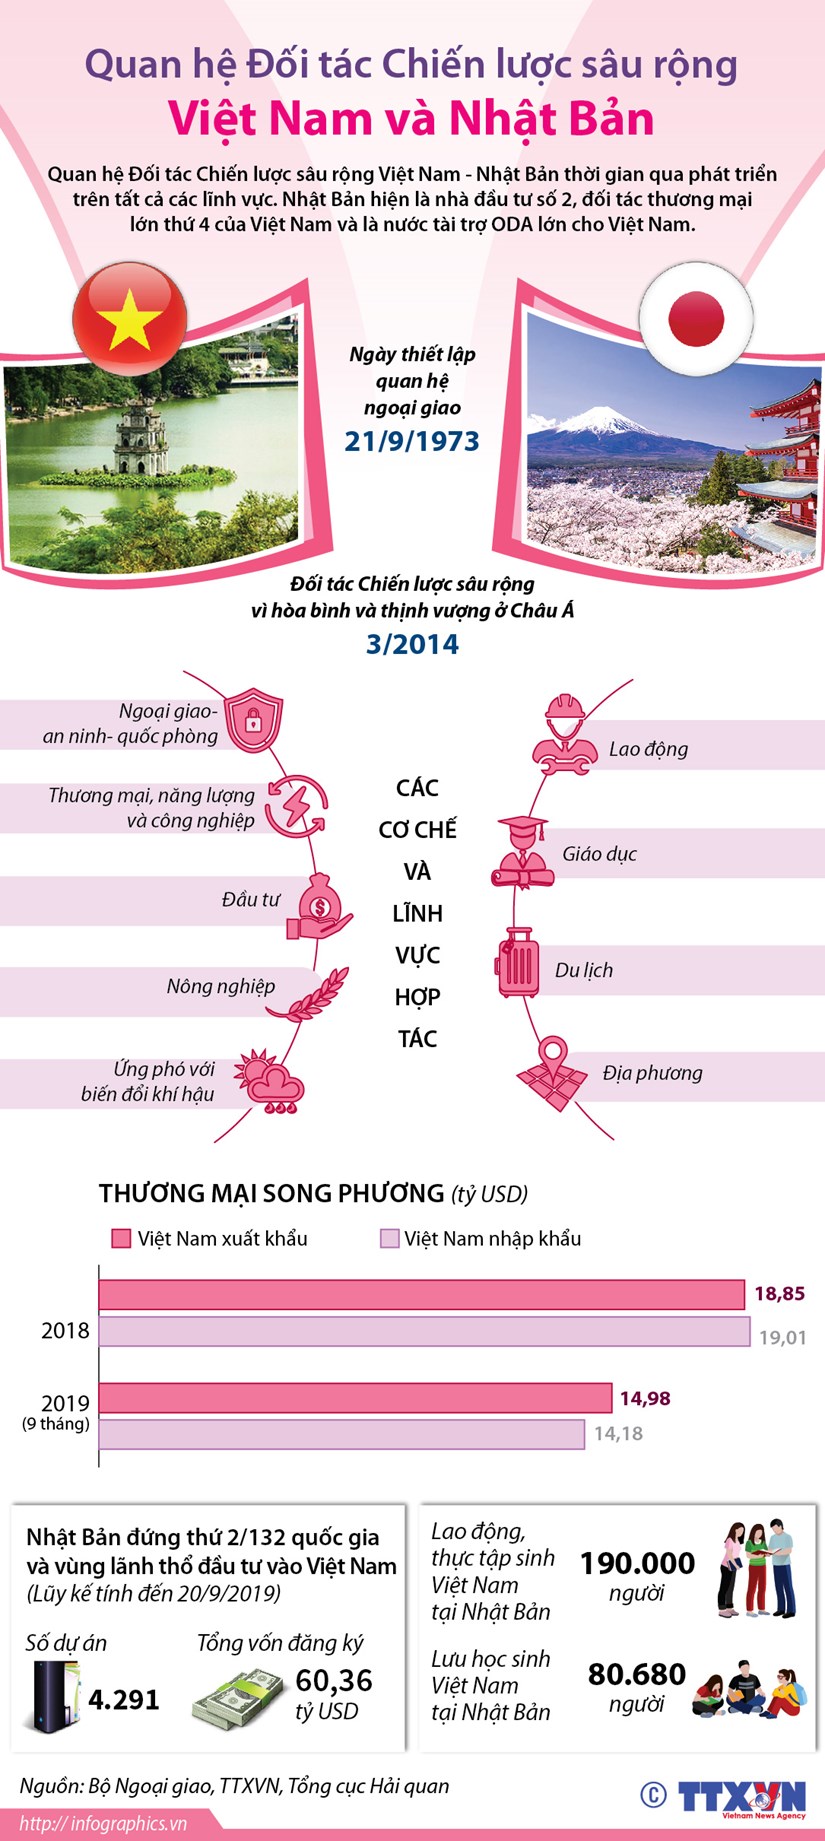 [Infographics] Quan he doi tac chien luoc sau rong Viet Nam-Nhat Ban hinh anh 1